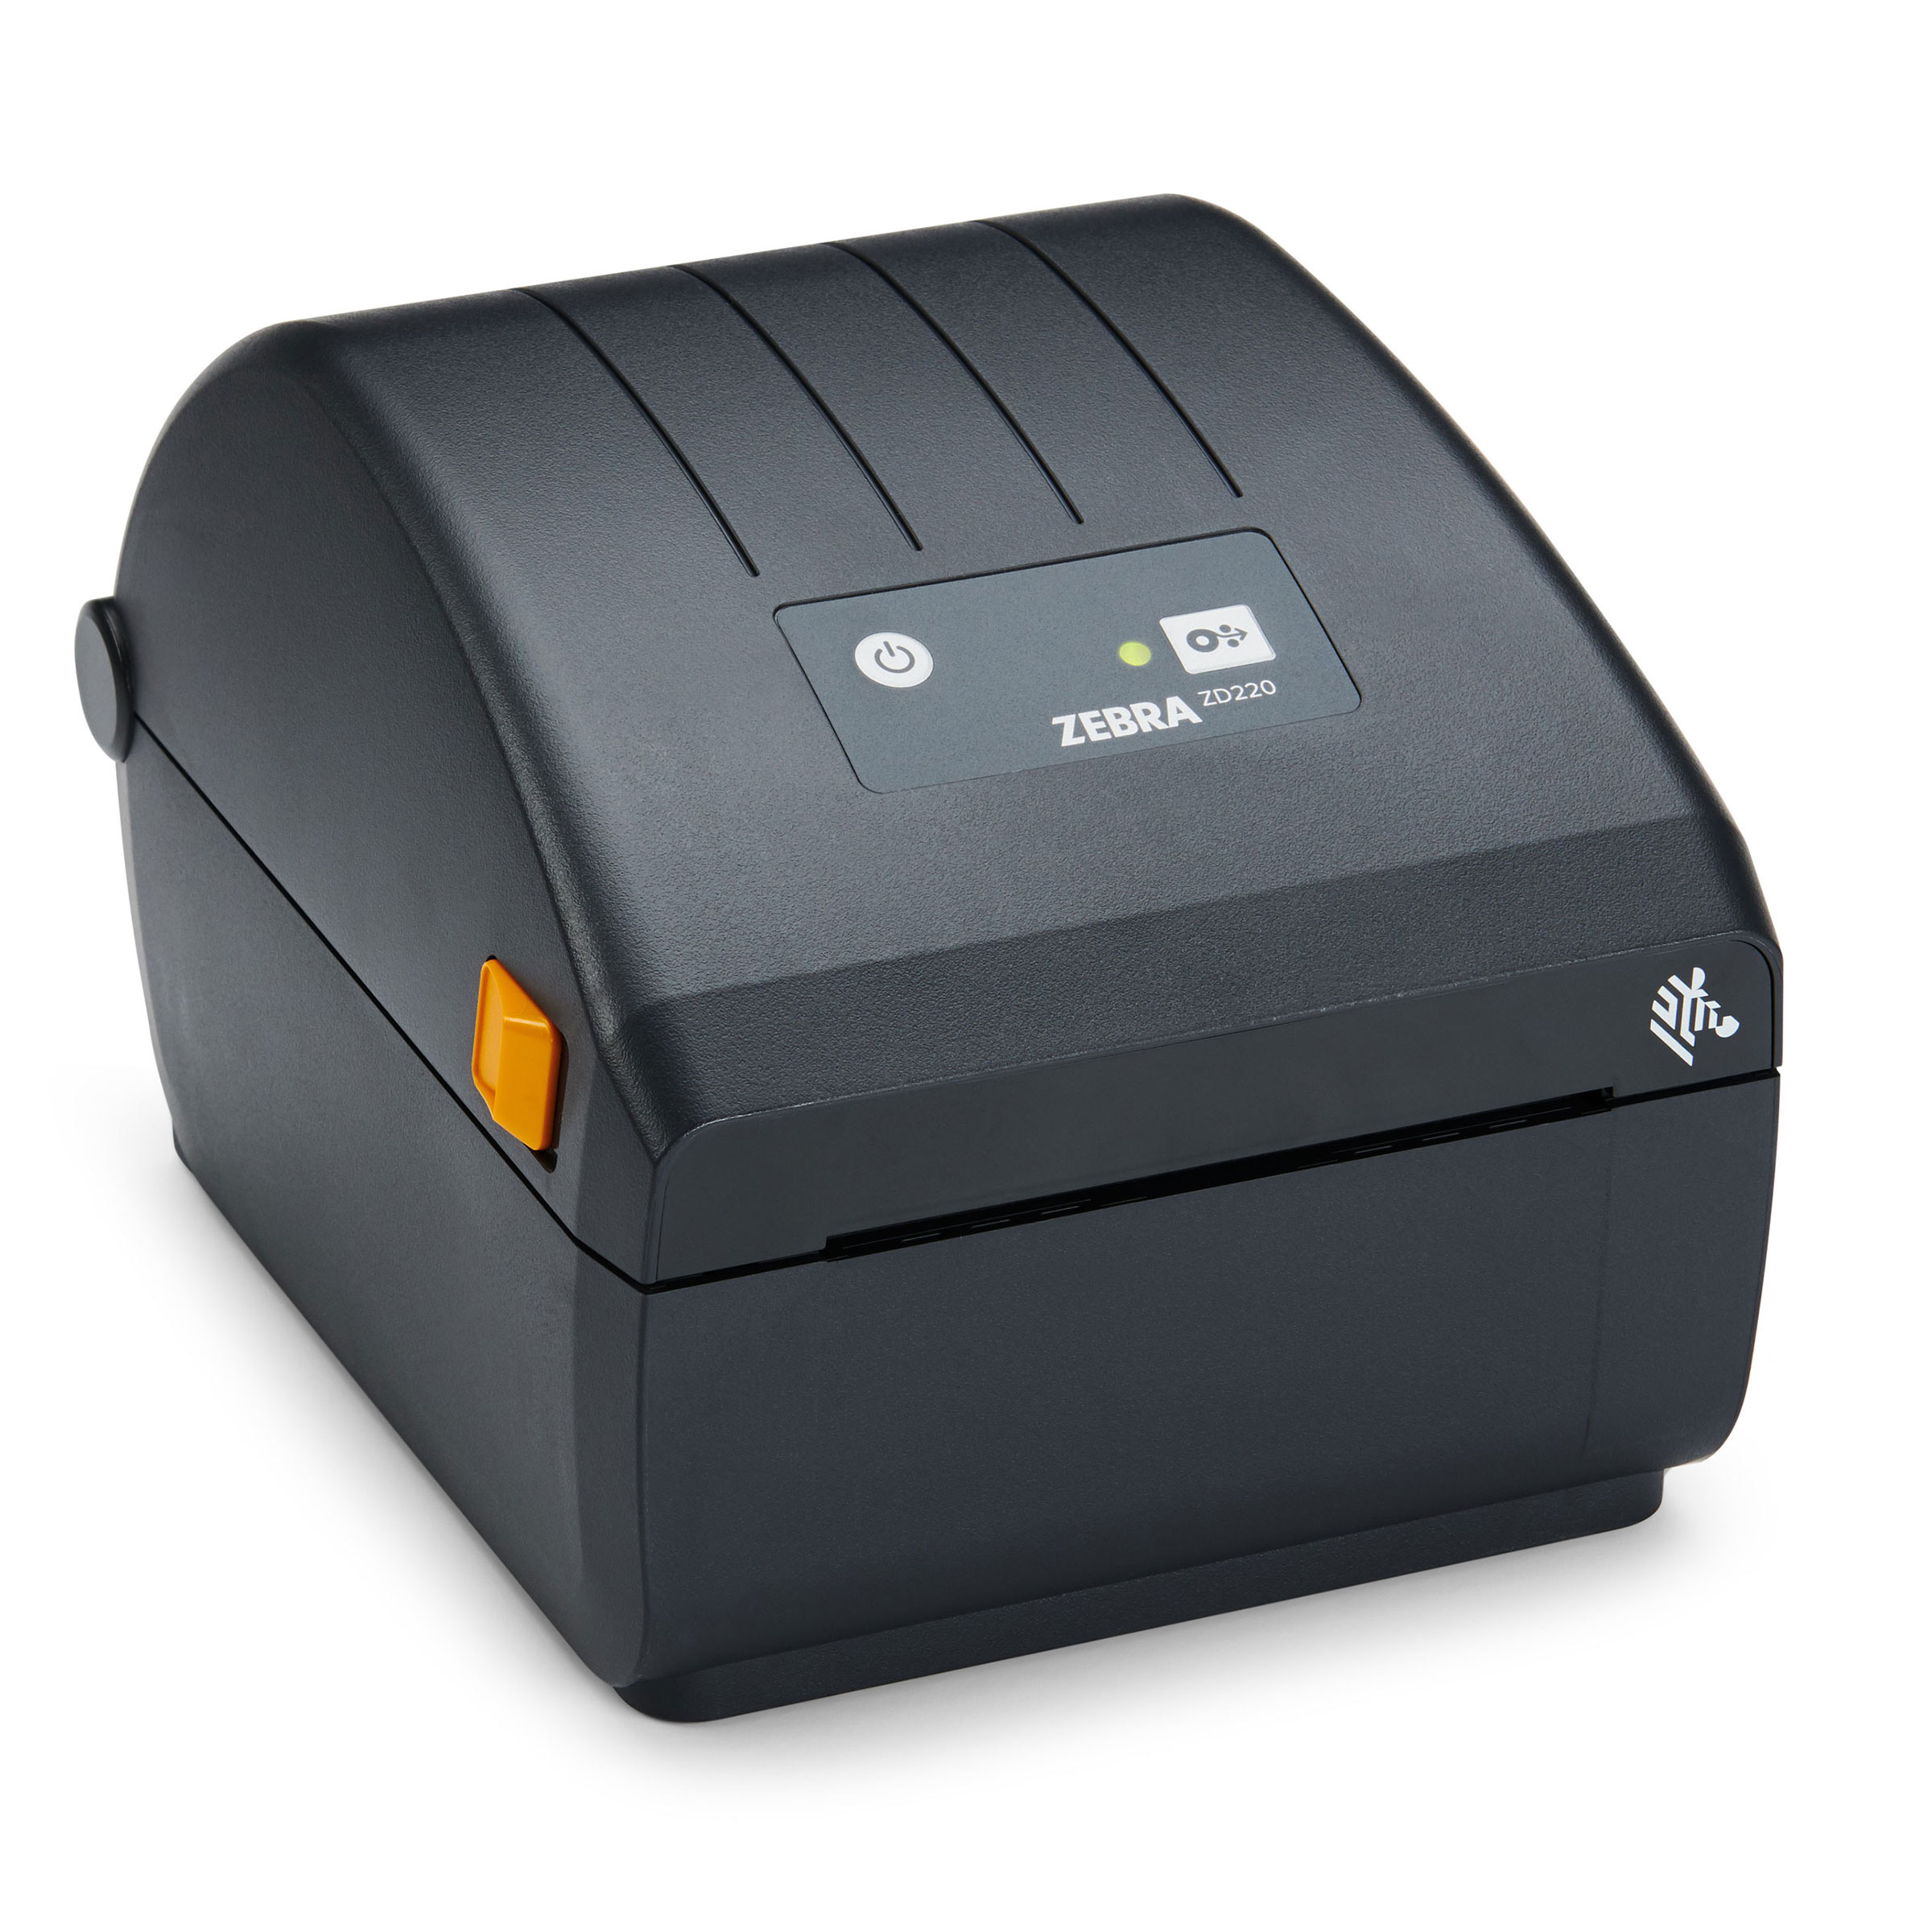 ZD200 Series Desktop Printer | Zebra